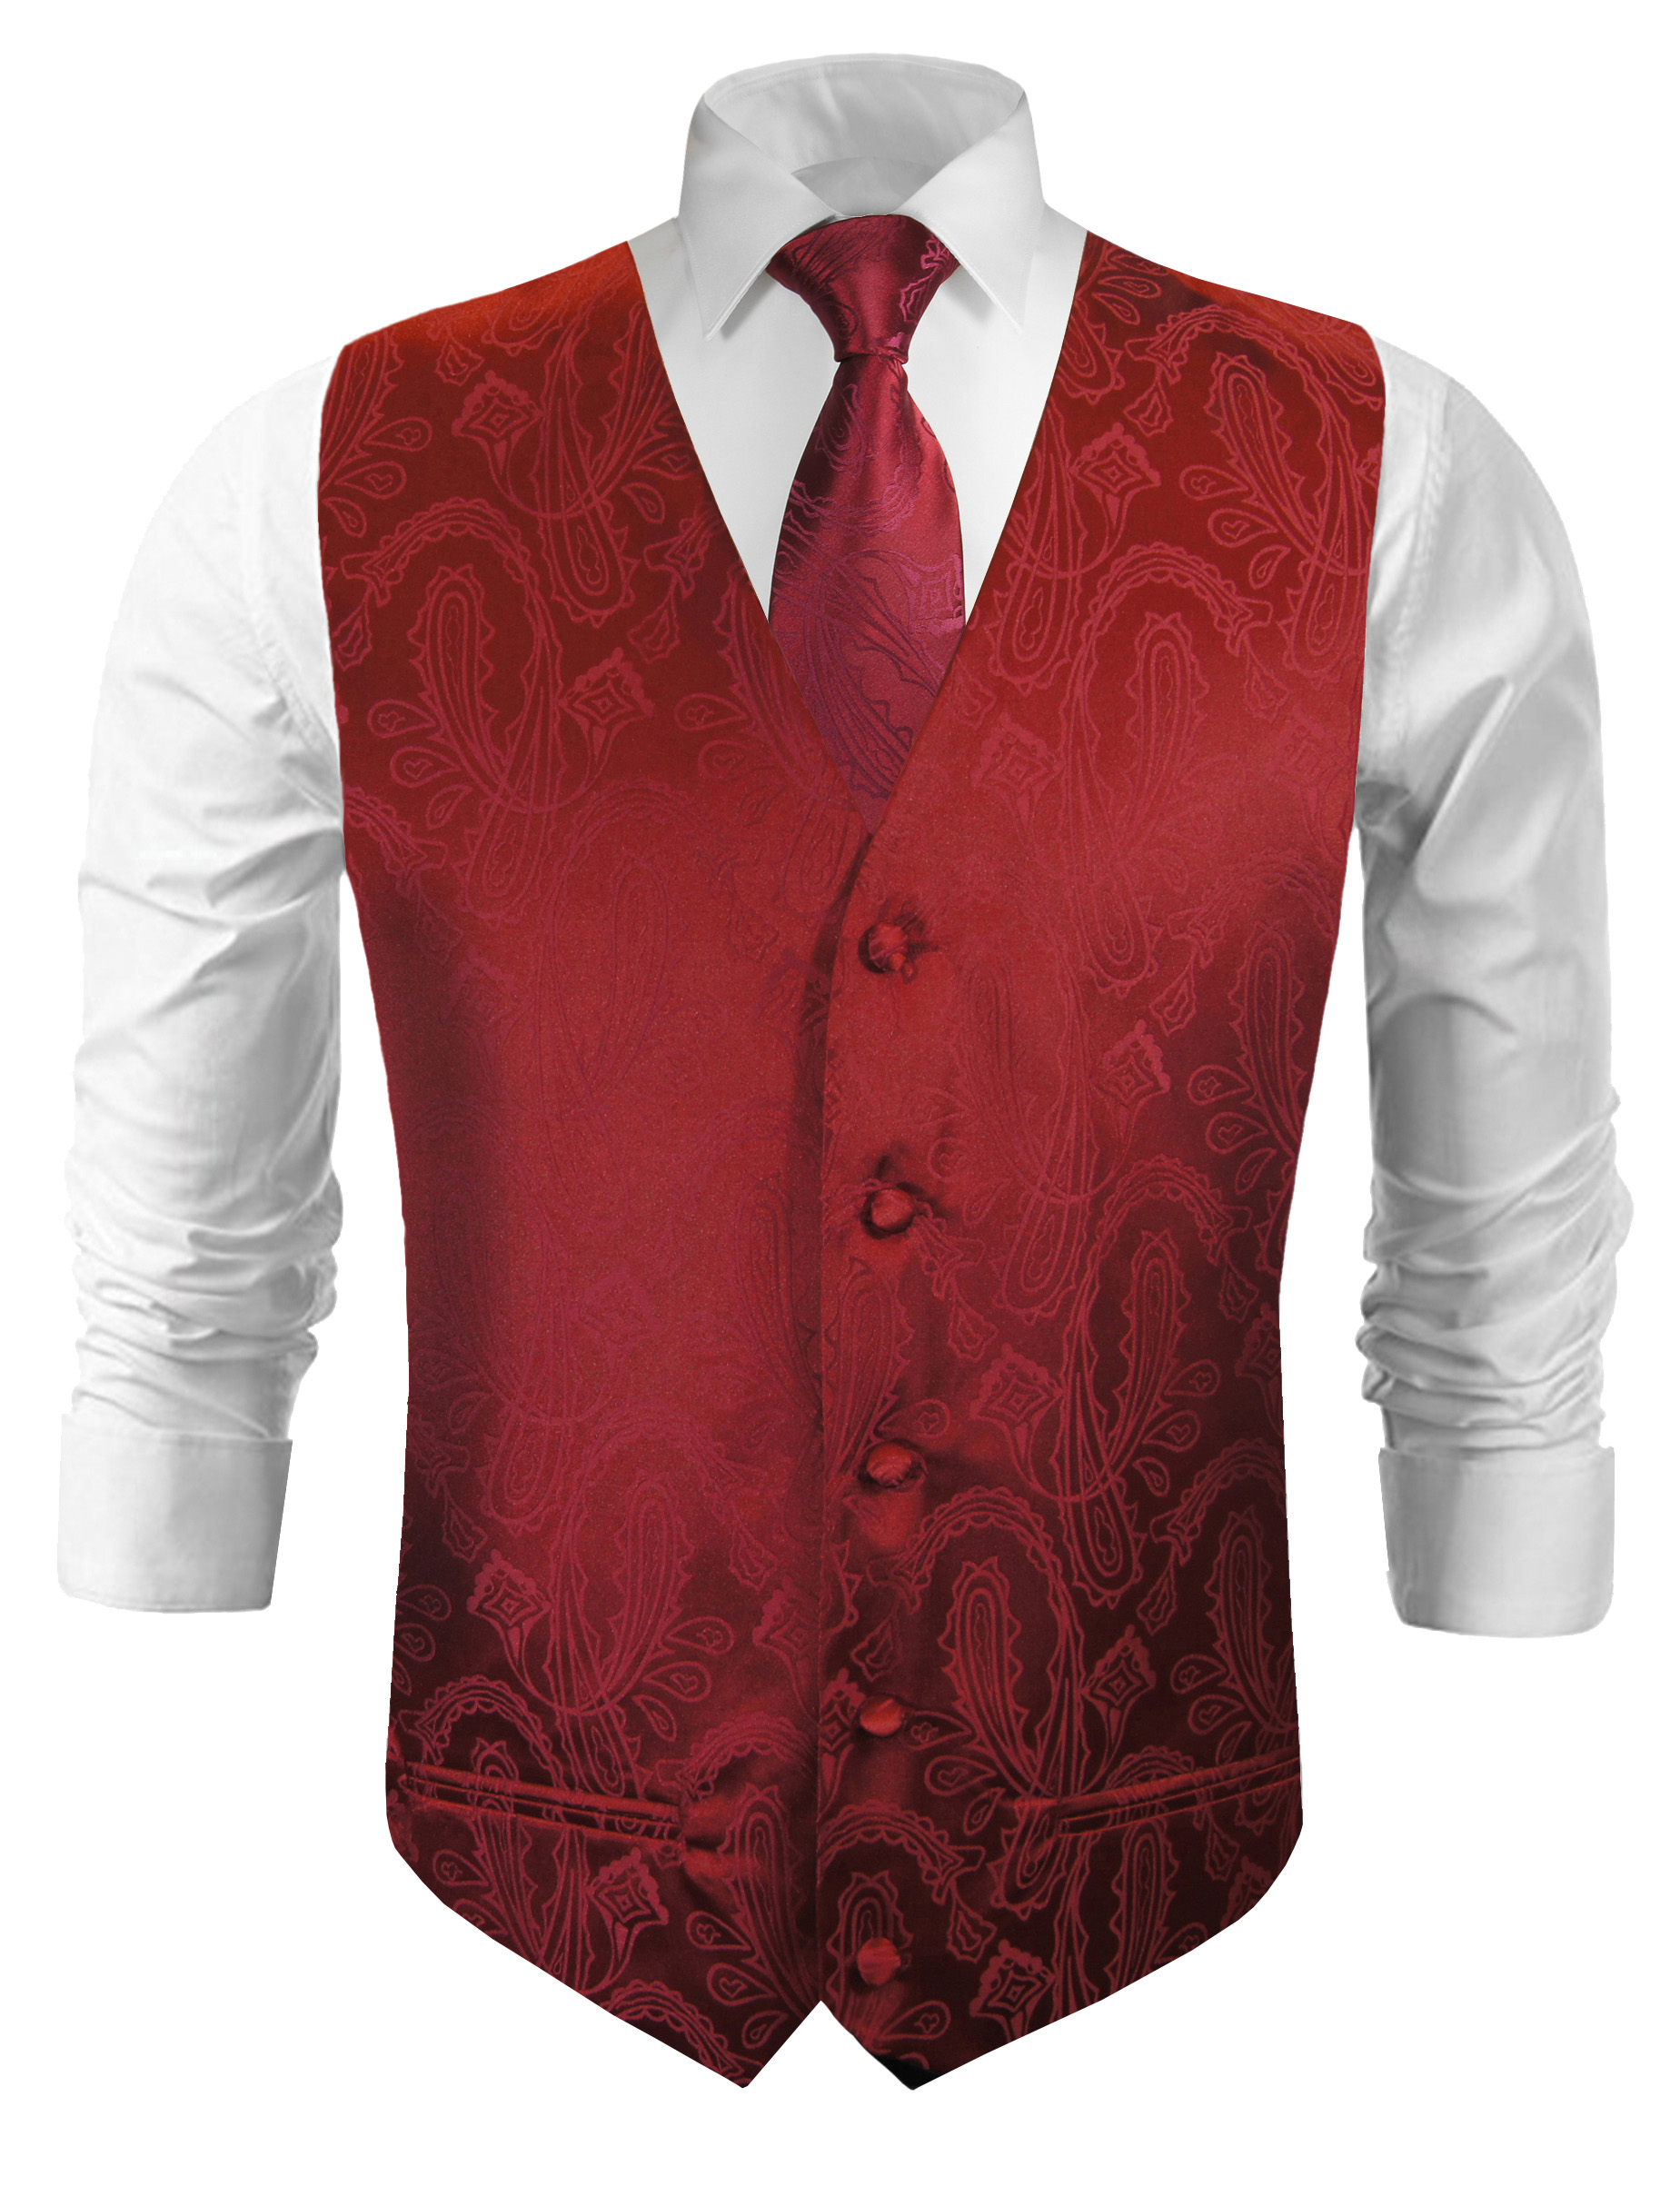 Krawatte von Paul Malone schwarz rot Hochzeitskrawatte Br/äutigam